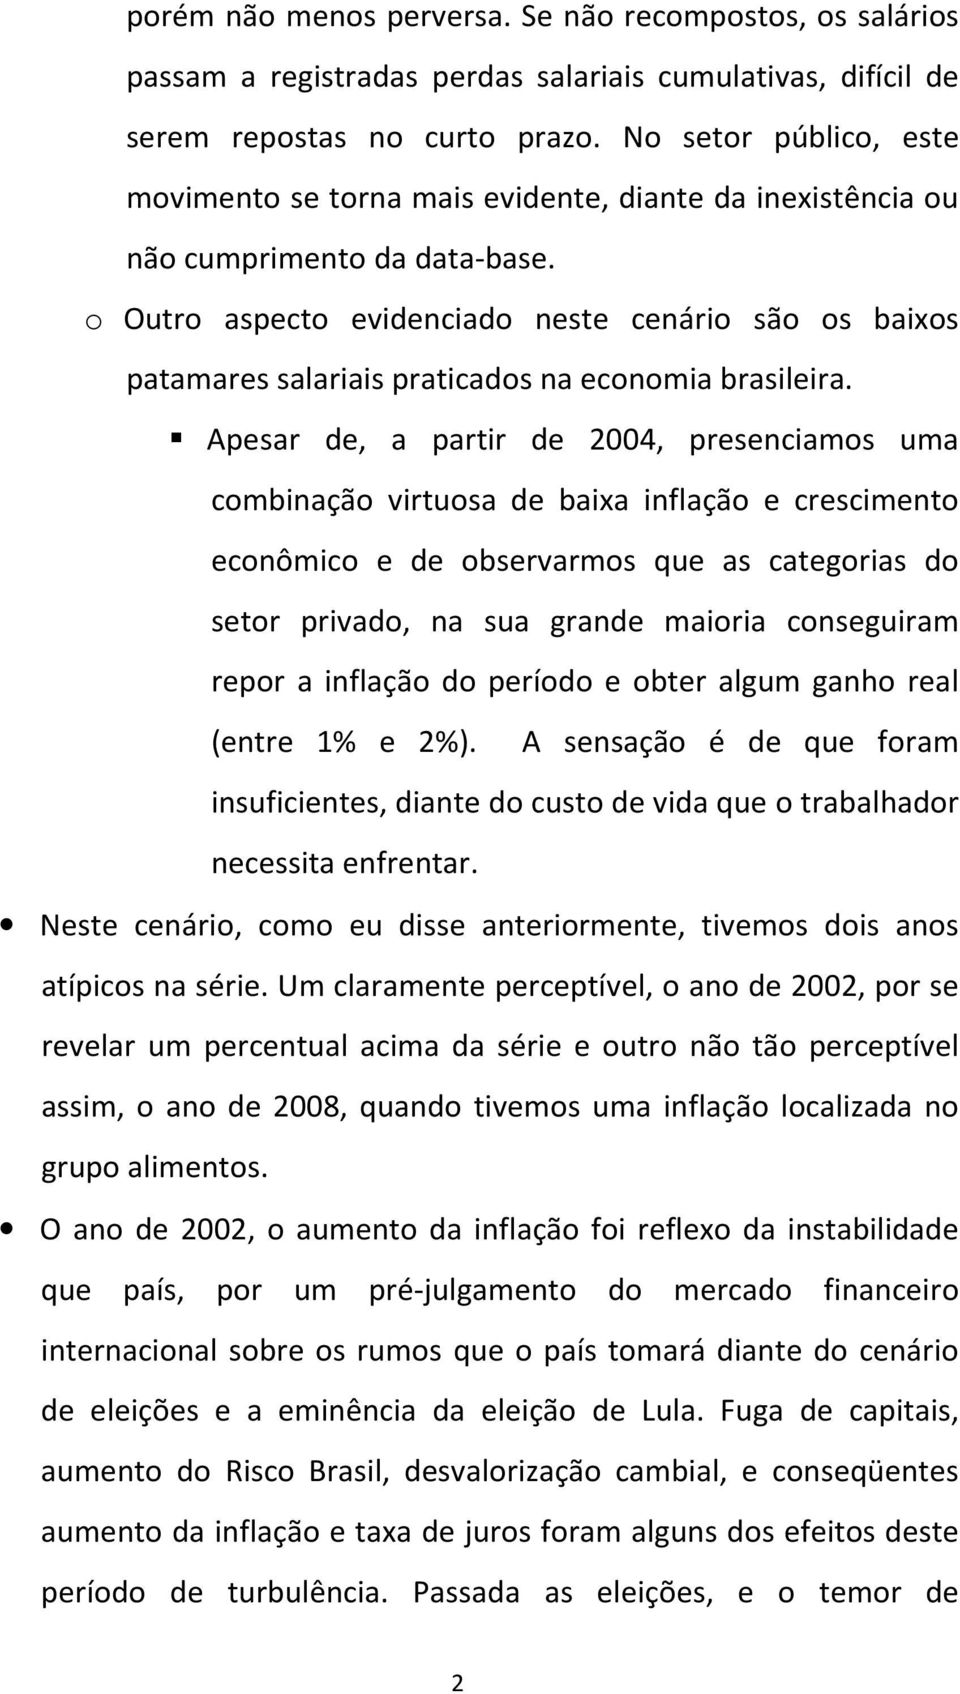 o Outro aspecto evidenciado neste cenário são os baixos patamares salariais praticados na economia brasileira.